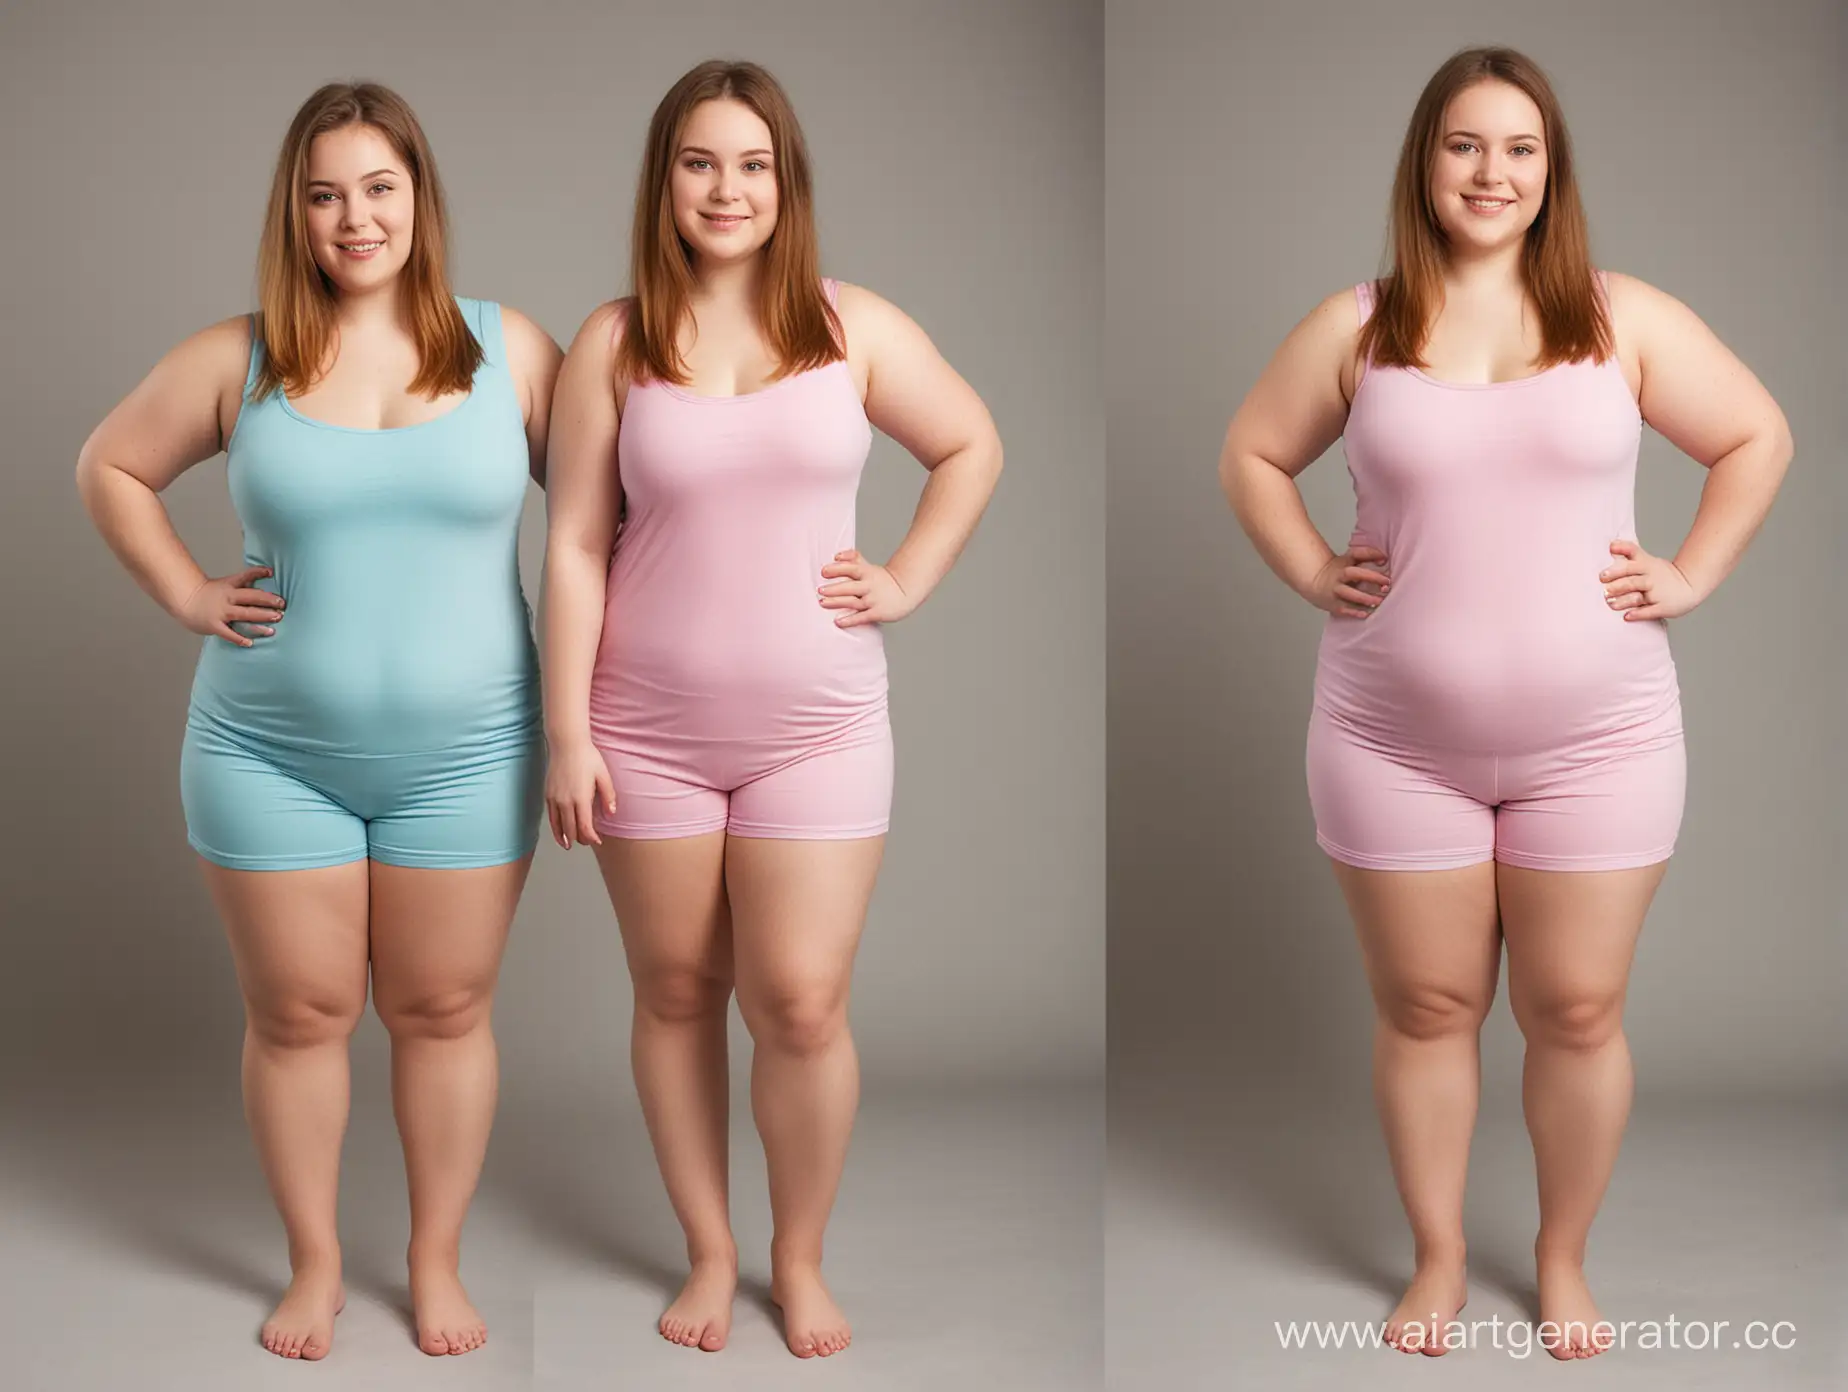 создайте новое качественное фото с двумя  девушками - они одинаково одеты, но с разынми фигурами - одна толстая, другая худая